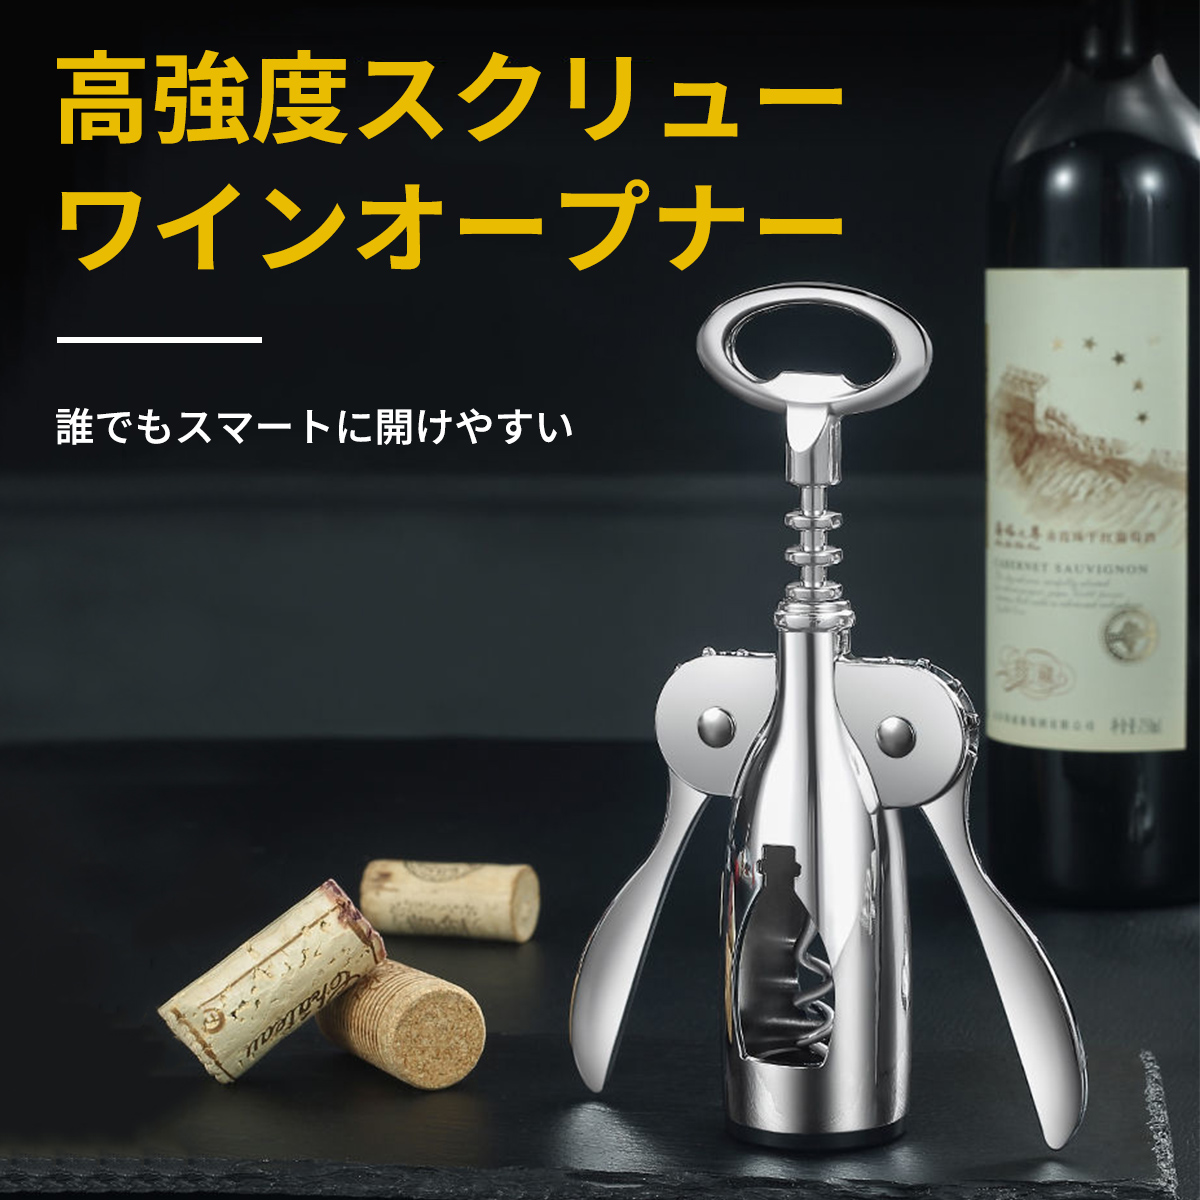 SALE／73%OFF】【SALE／73%OFF】 ワインオープナー 簡単 栓 ワイン